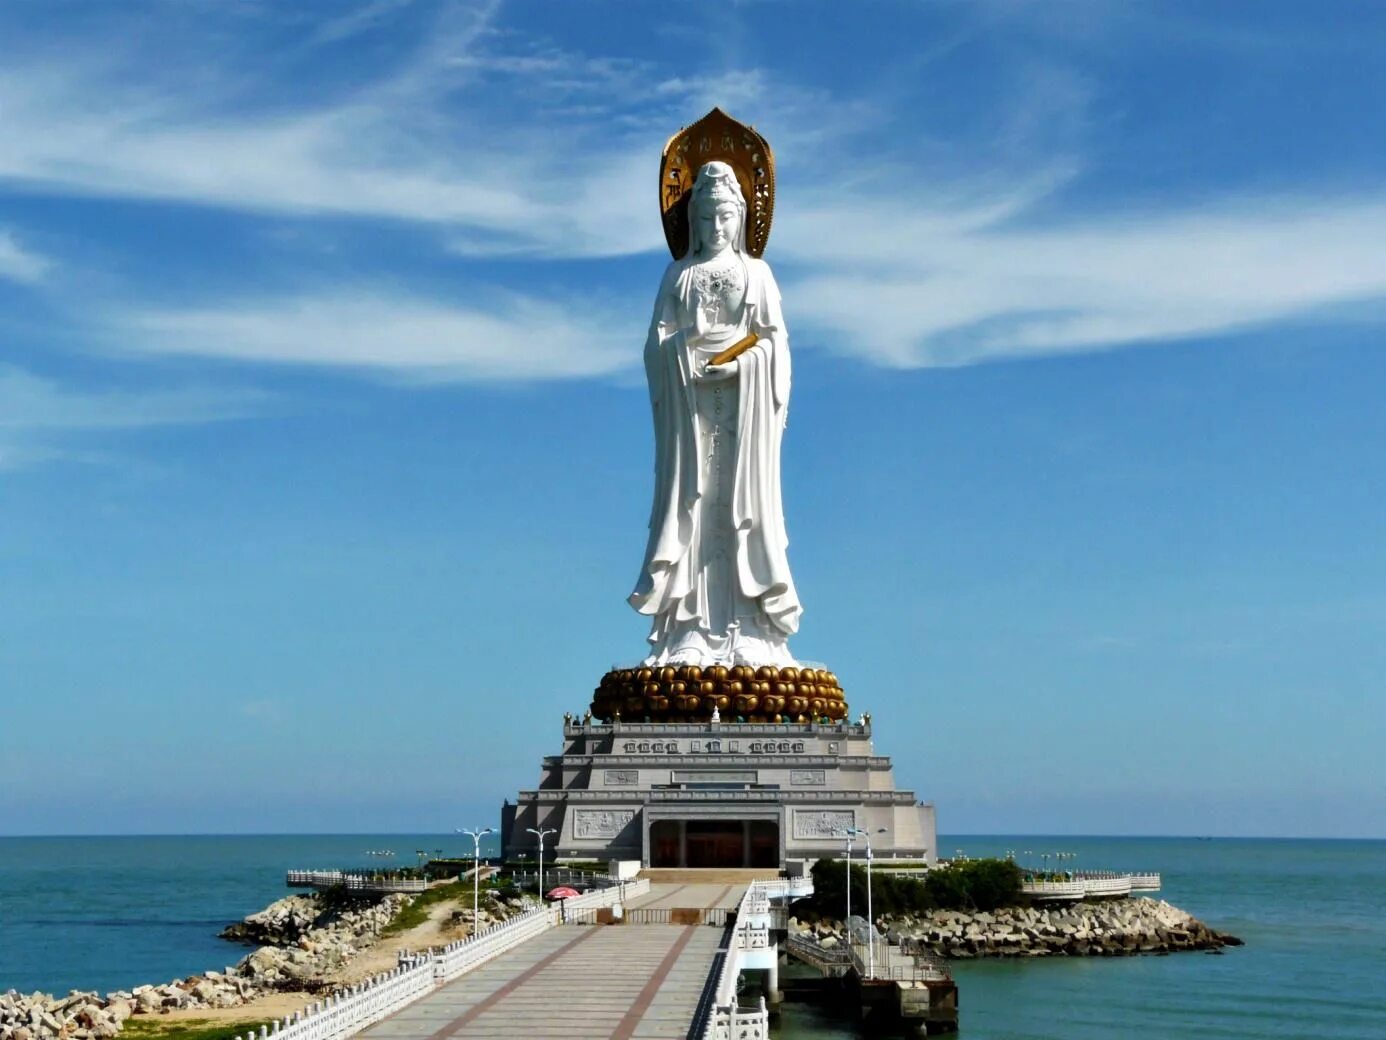 Hainan island sanya. Статуя Богини Гуаньинь на острове Хайнань. Храм Наньшань, Санья, Хайнань. Богиня Гуань Инь Хайнань. Статуя Гуаньинь (Наньшань).